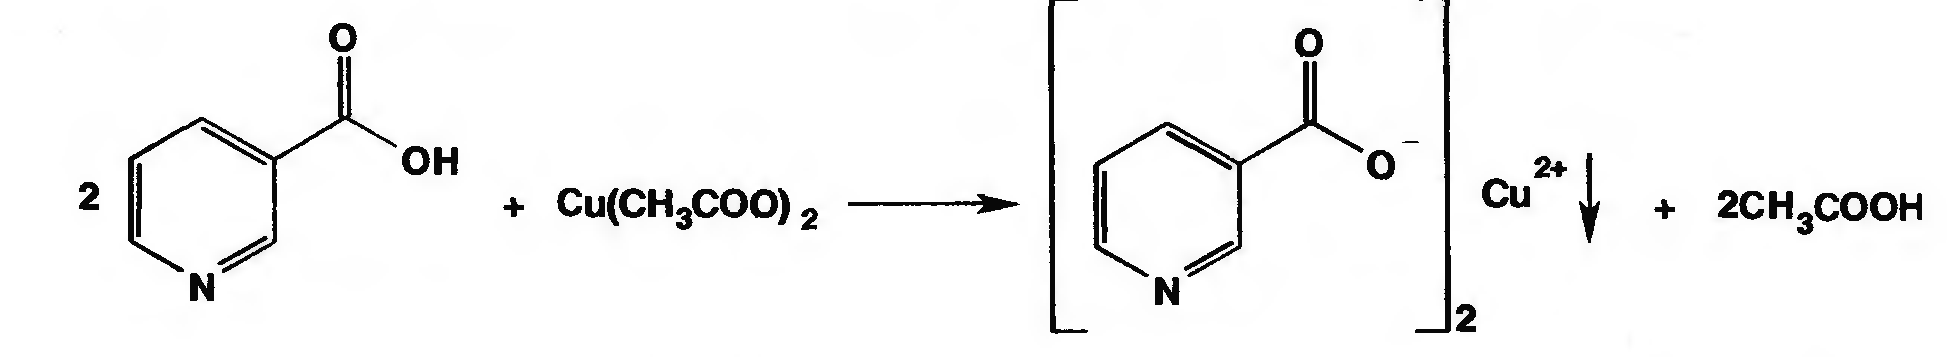 Медь подлинность. Никотиновая кислота с ацетатом меди реакция. Никотиновая кислота с ацетатом меди. Никотиновая кислота подлинность реакции. Никотиновая кислота качественные реакции.